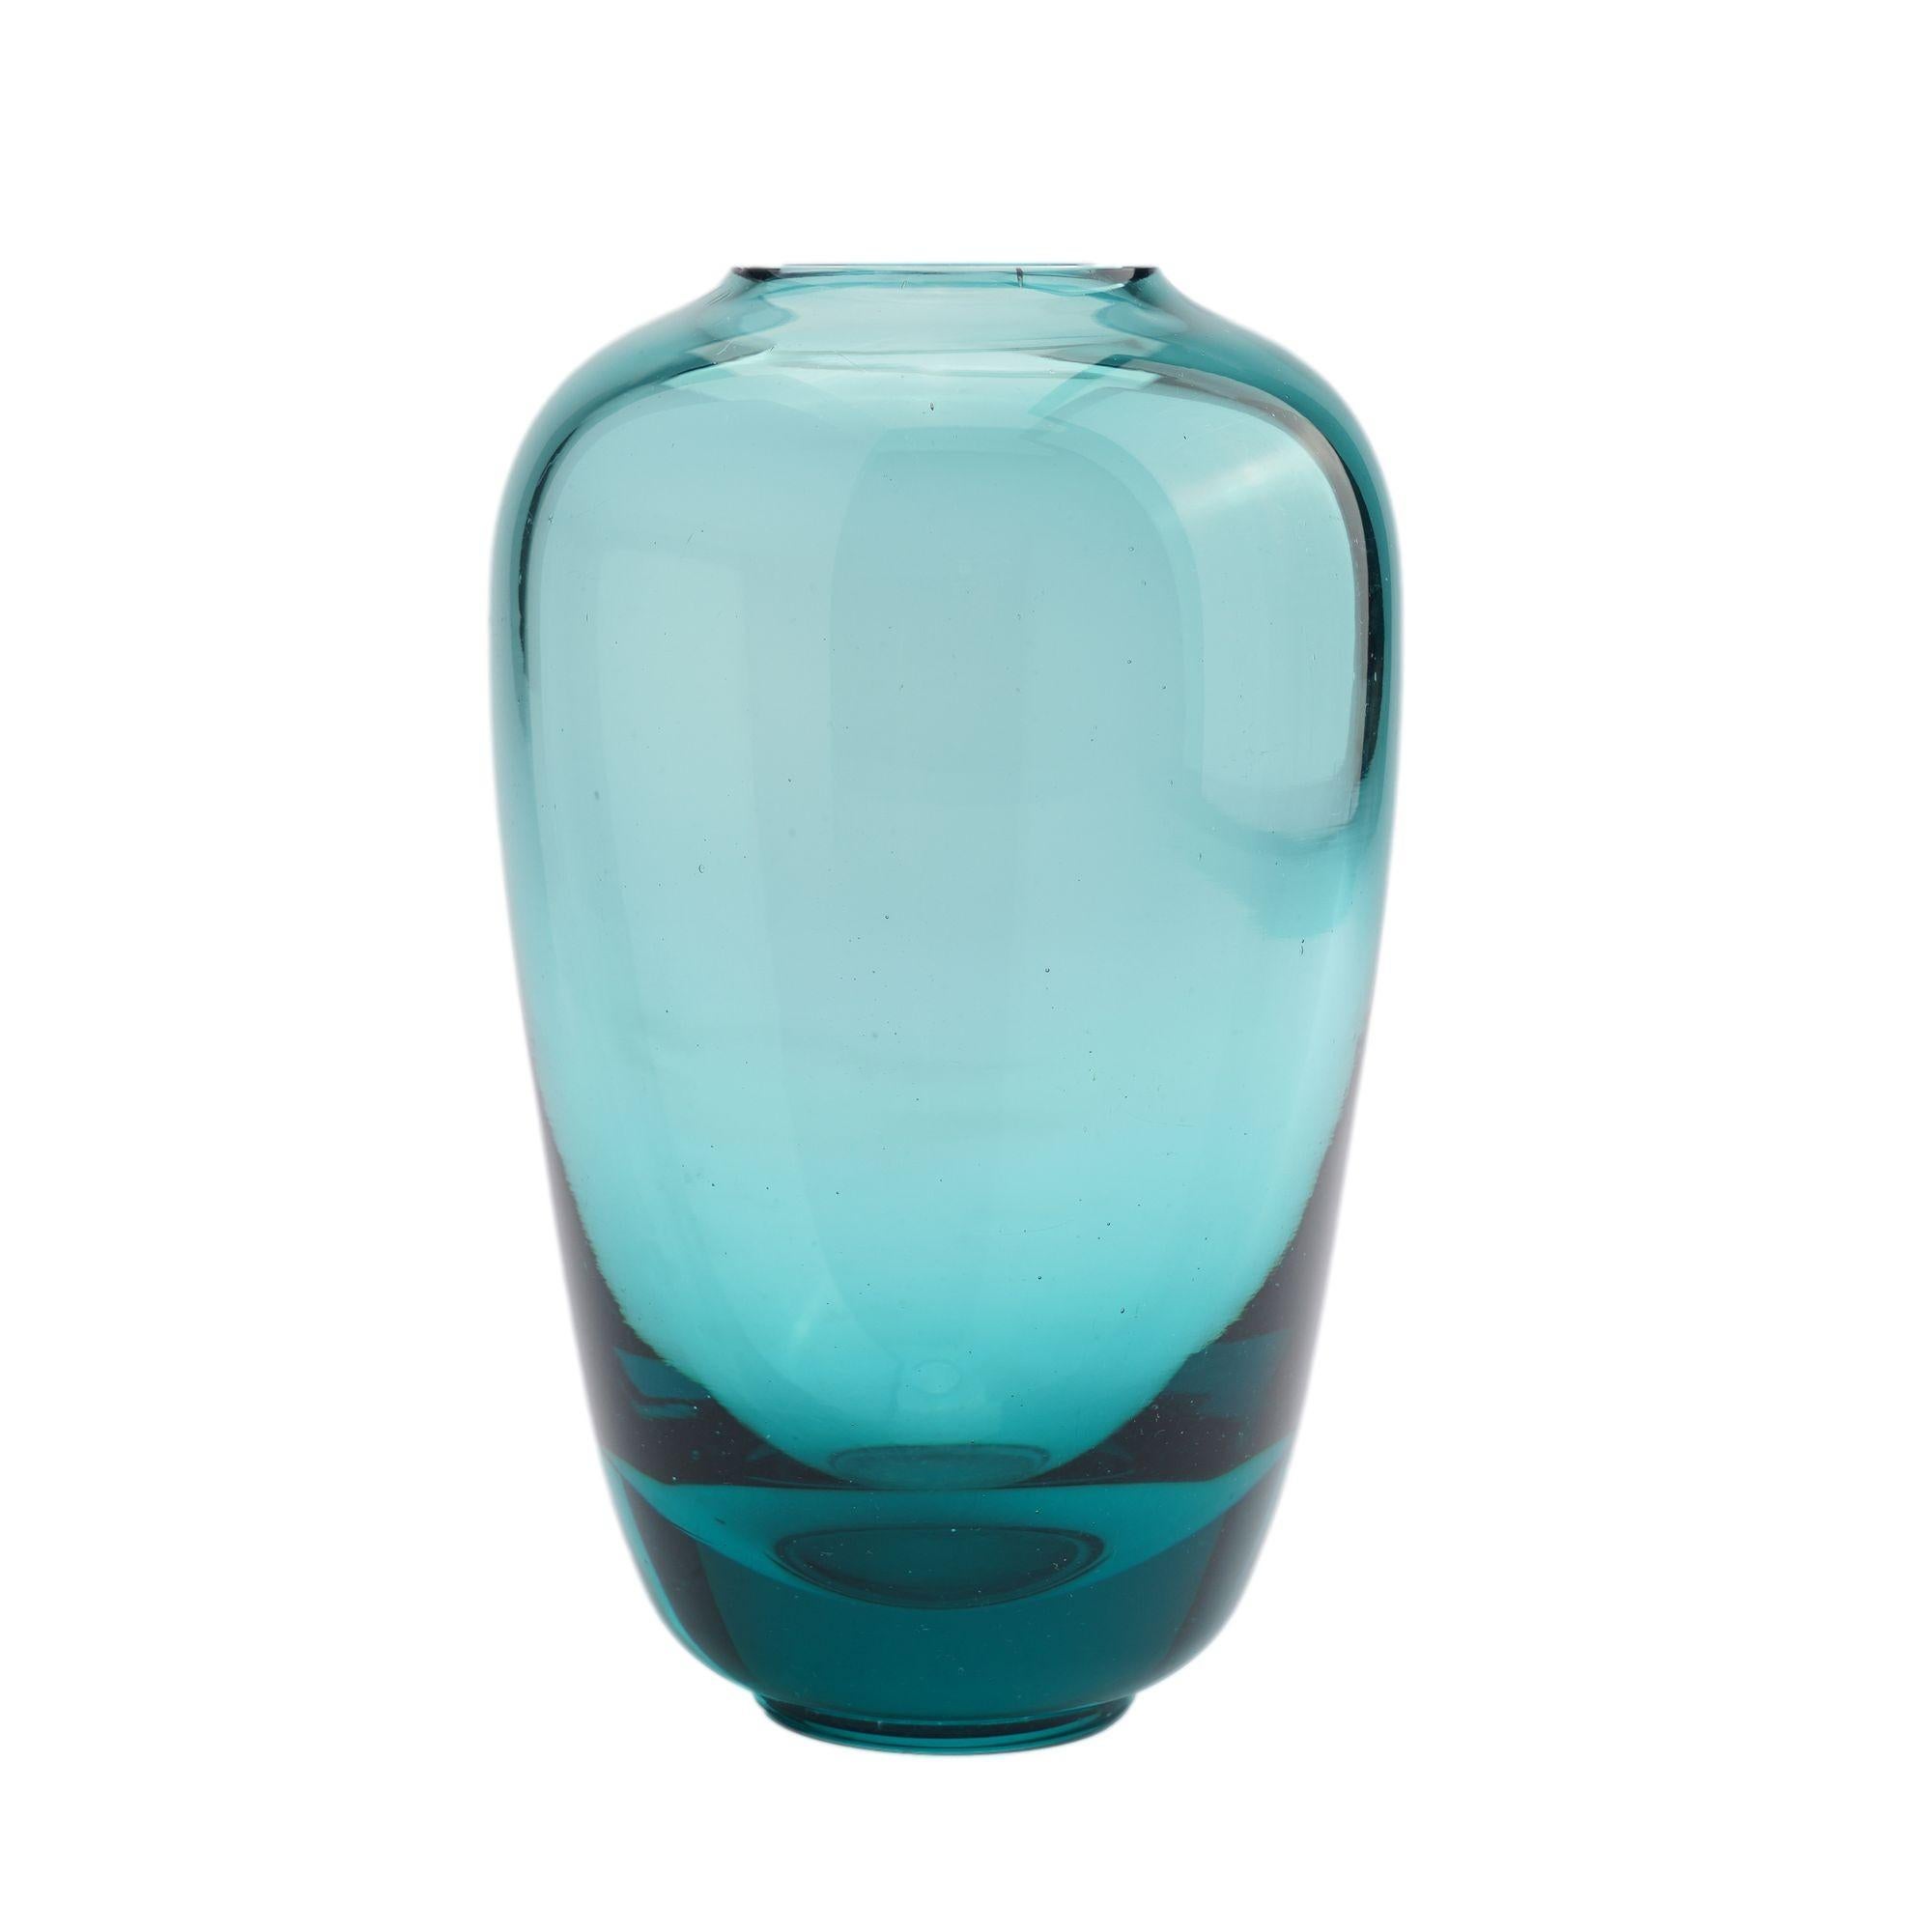 Geblasene und sich verjüngende Vase aus Kunstglas in Karhula's charakteristischer blau/grüner Farbe und mit rundem Fuß mit poliertem Pontil. Entworfen von Göran Hongell.

Signiert auf dem Unterboden: GF 11, Karhula

Finnland, 1940er Jahre.